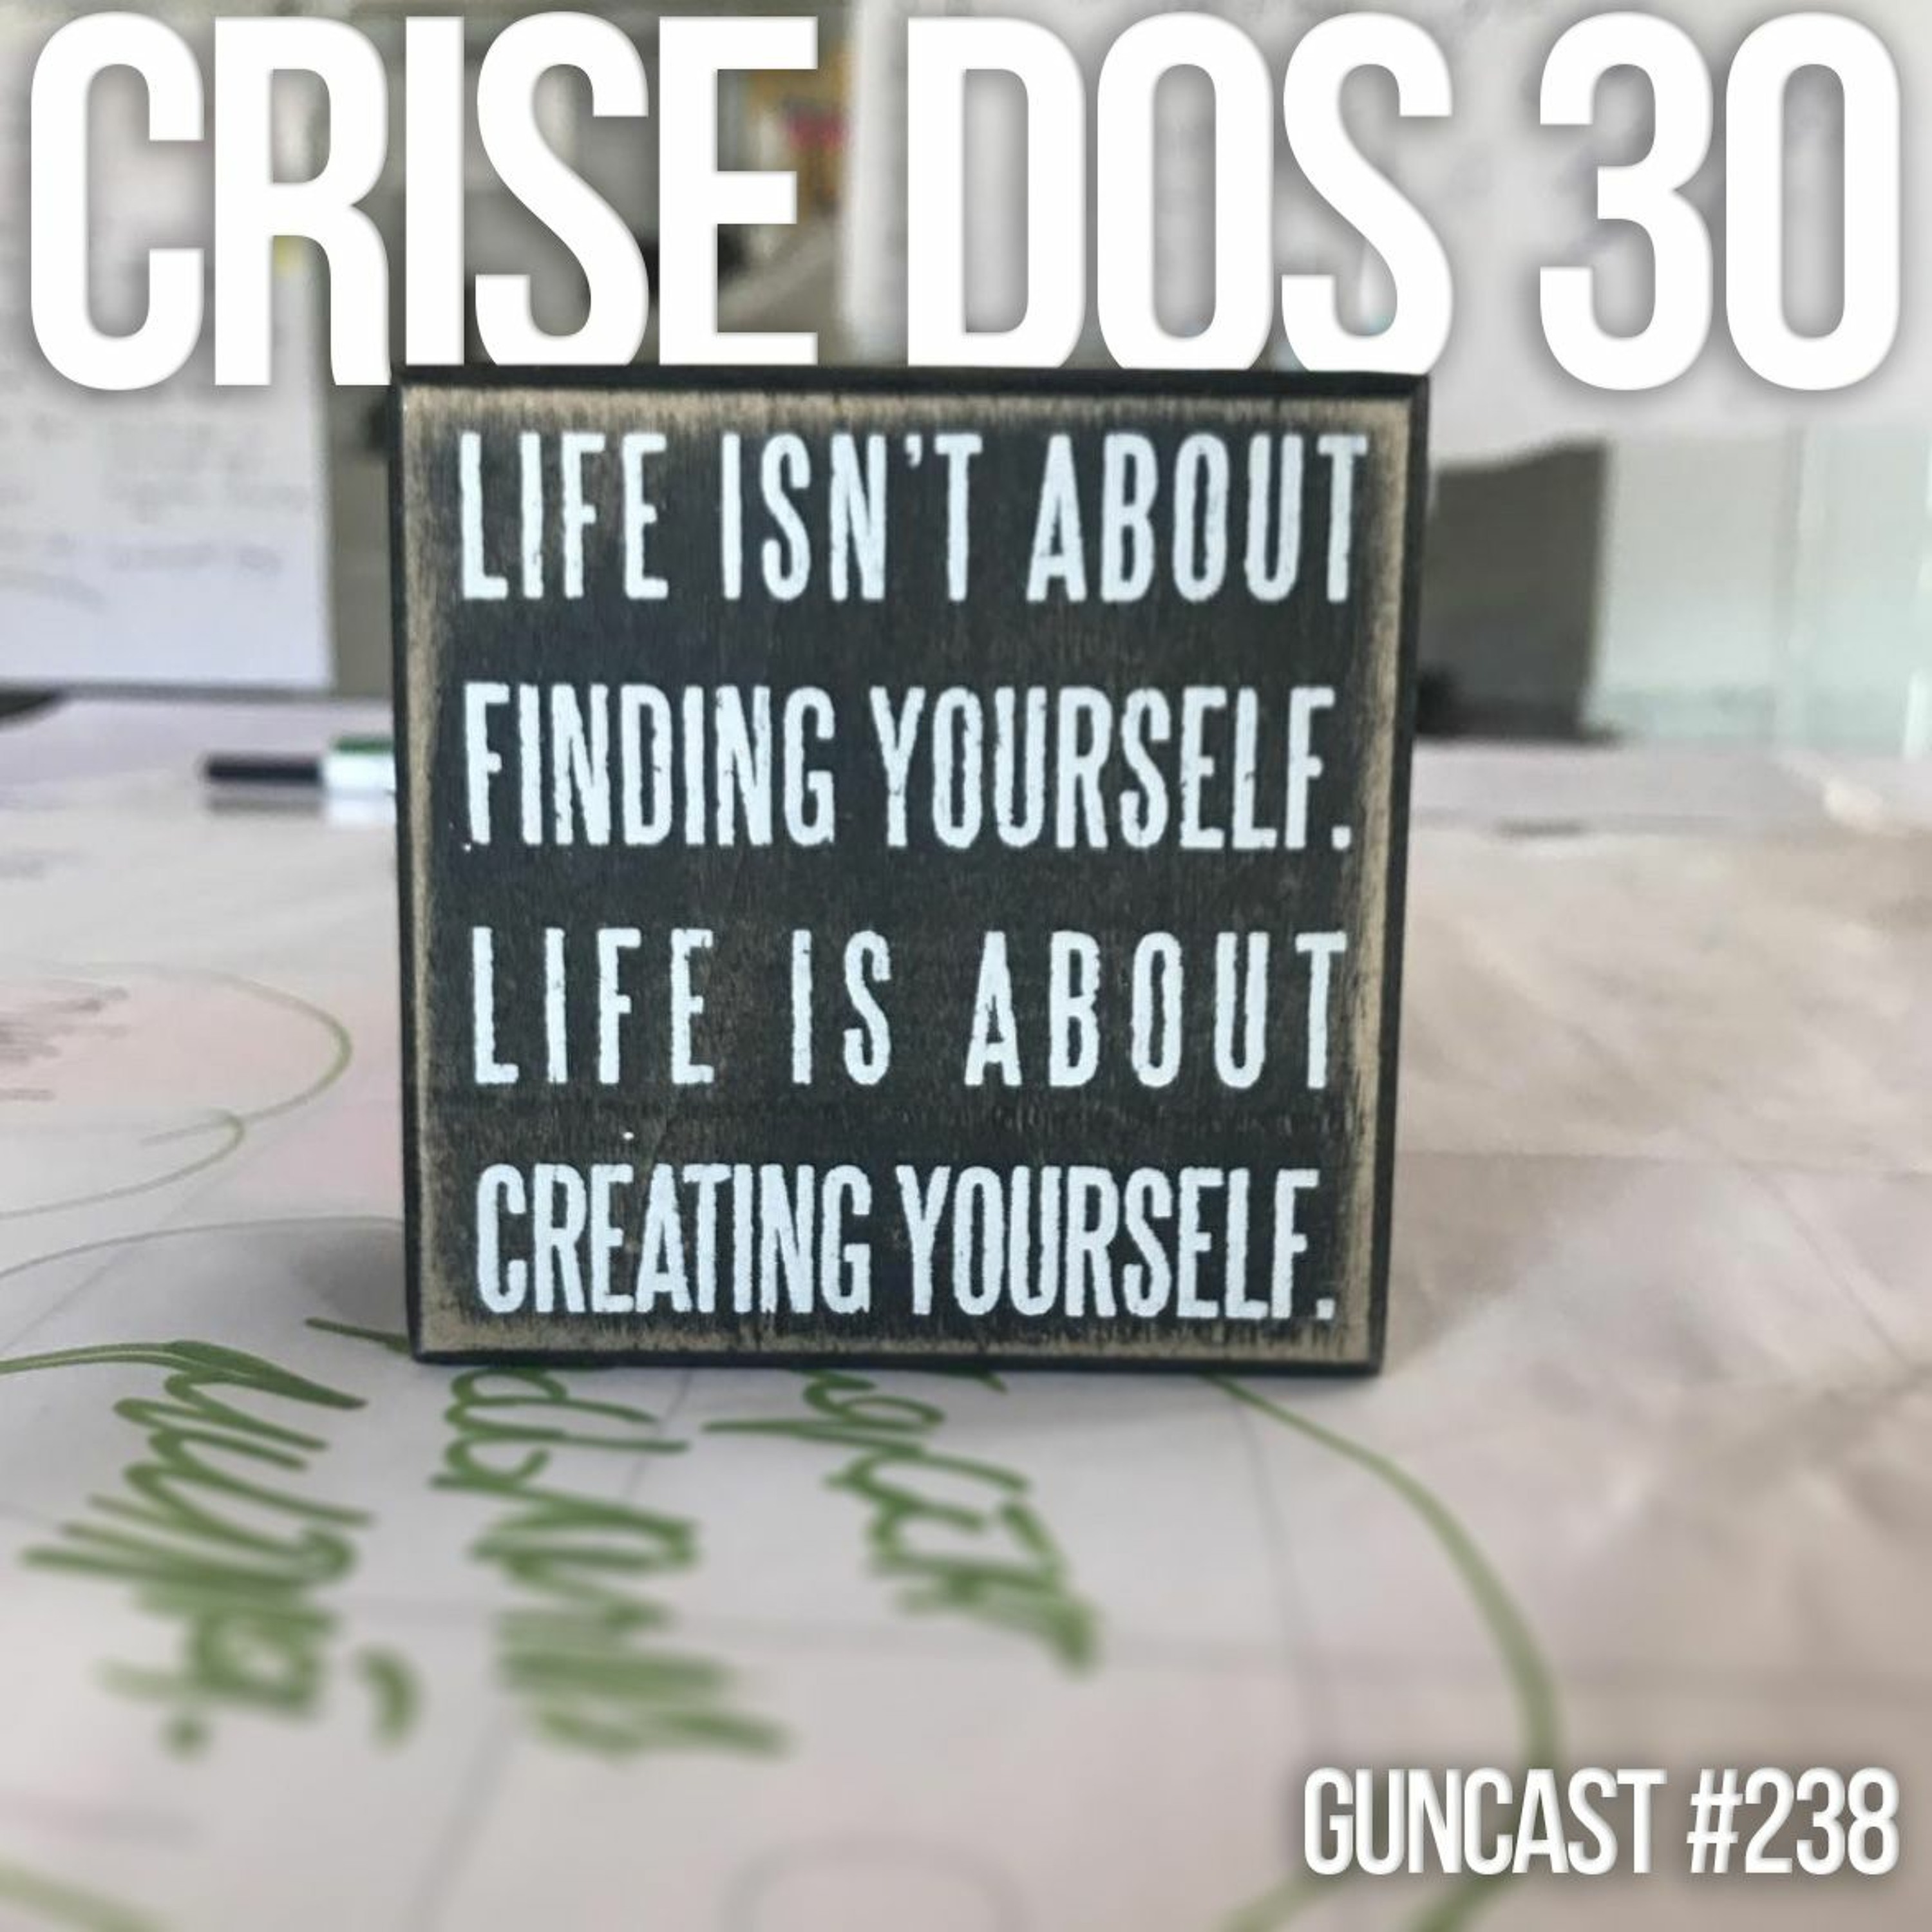 #238 Crise Dos 30